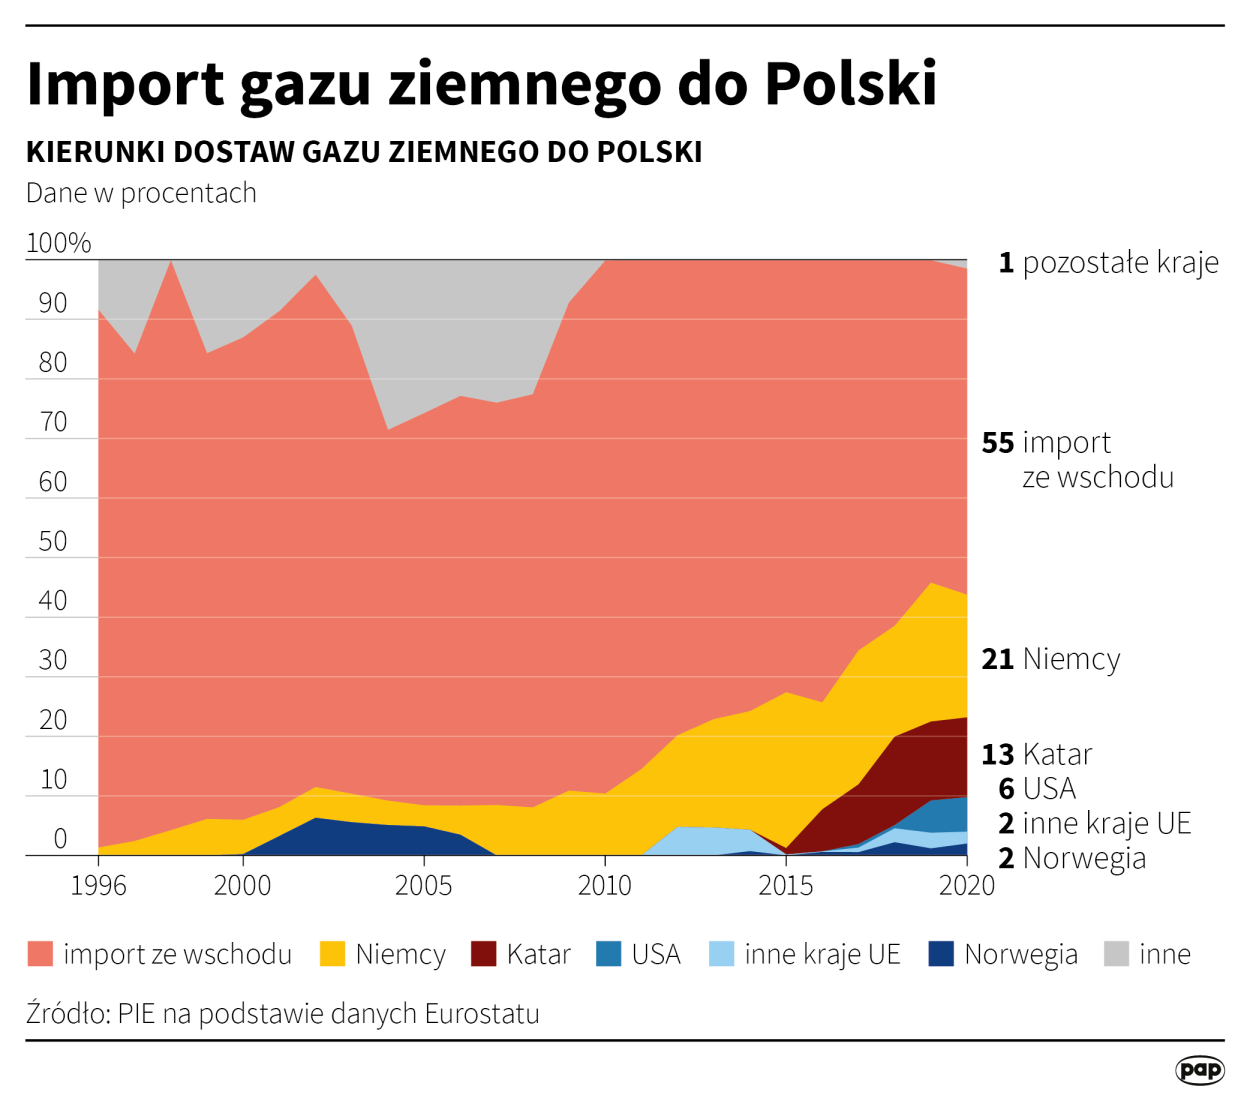 Rosyjski eksport gazu ziemnego. Autor: PAP/Maciej Zieliński